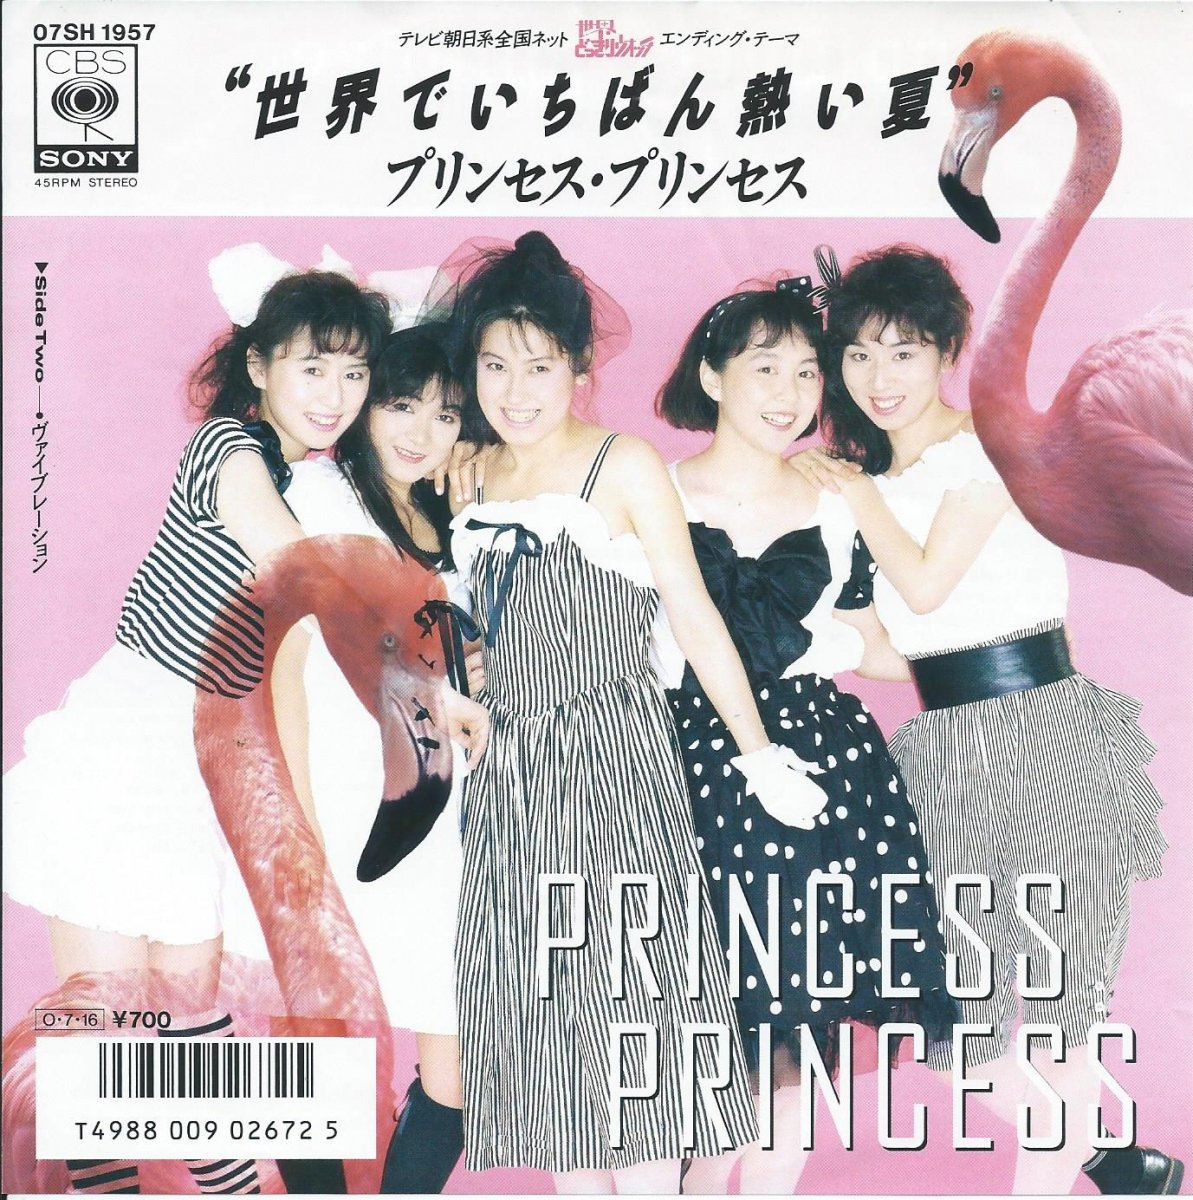 プリンセス・プリンセス PRINCESS PRINCESS / 世界でいちばん熱い夏 (7